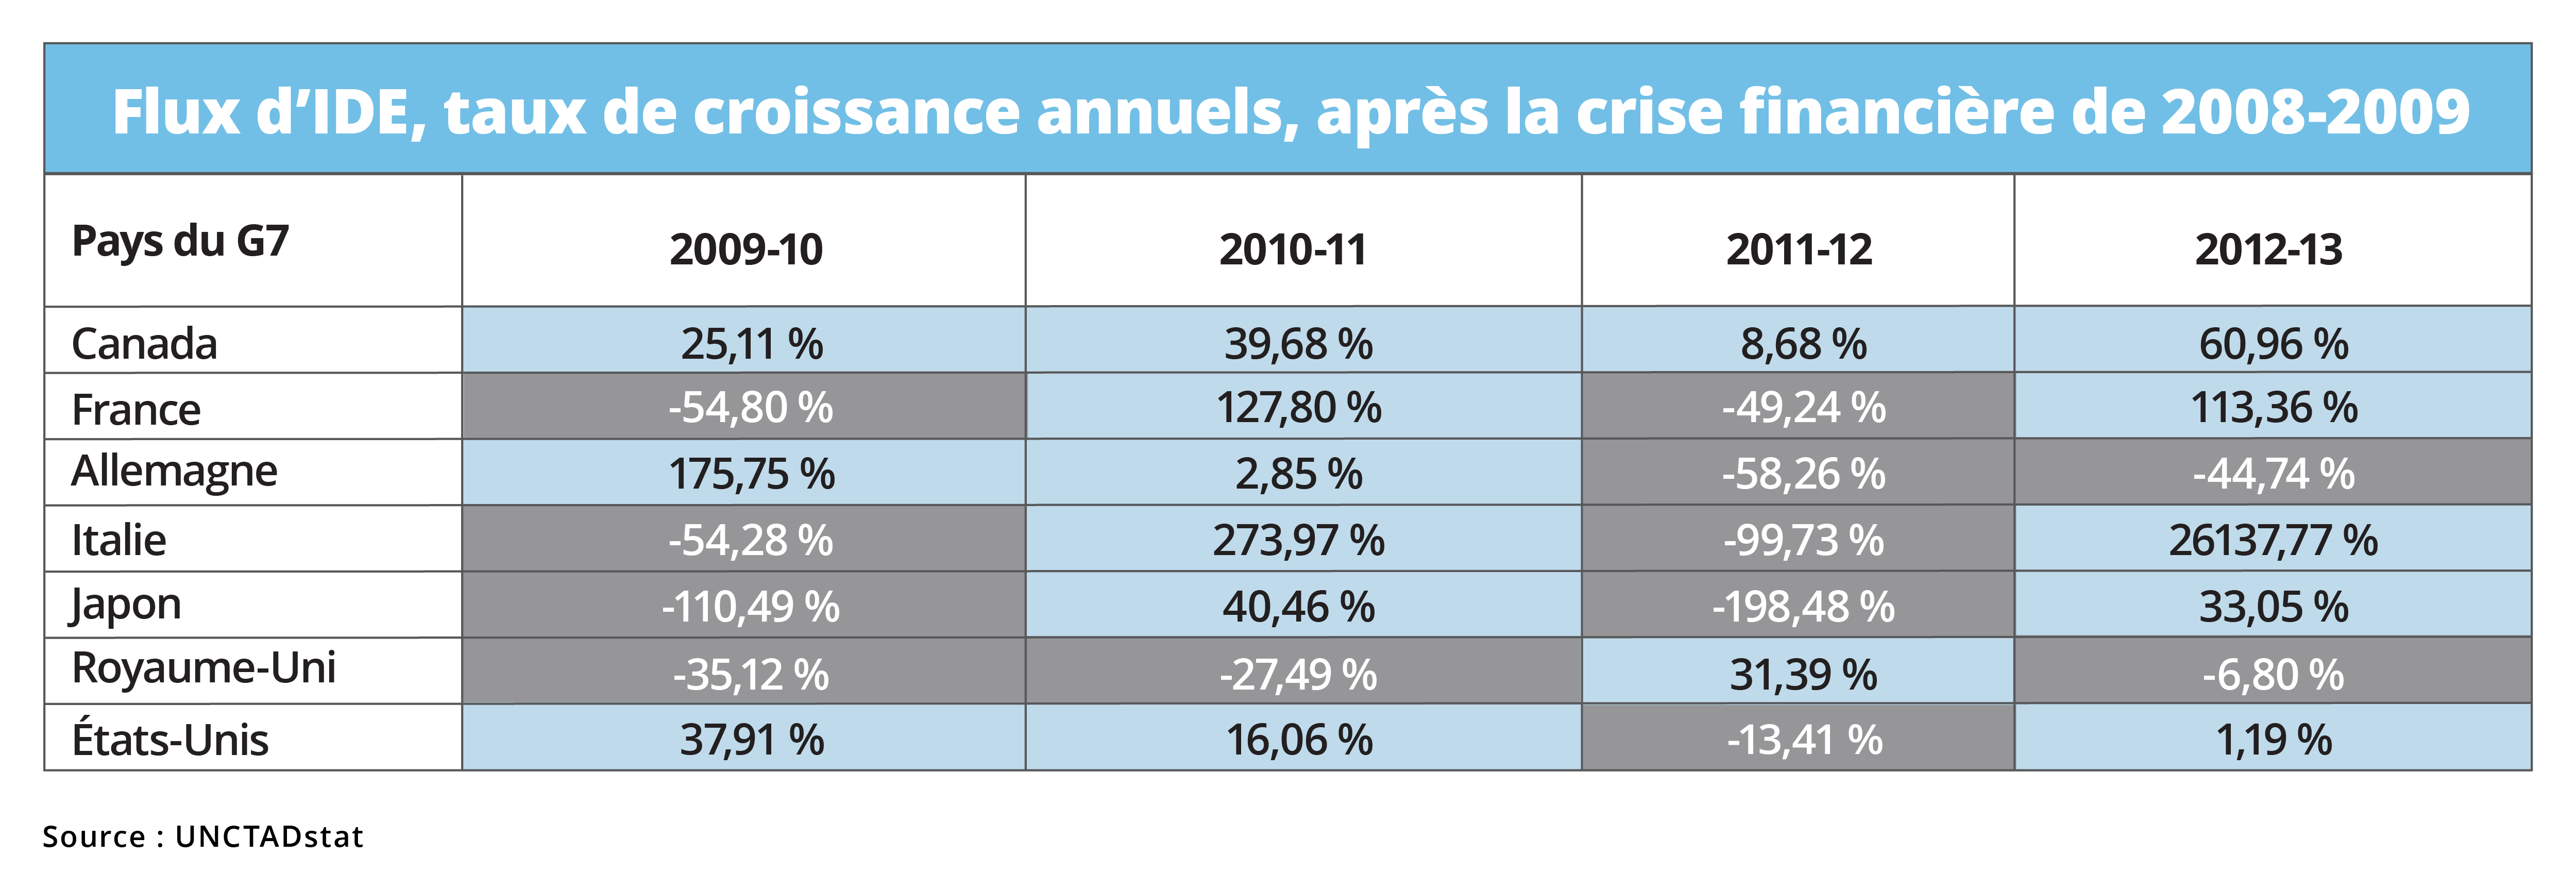 Flux d'IDE, taux de croissance annuels, après la crise financière de 2008-2009